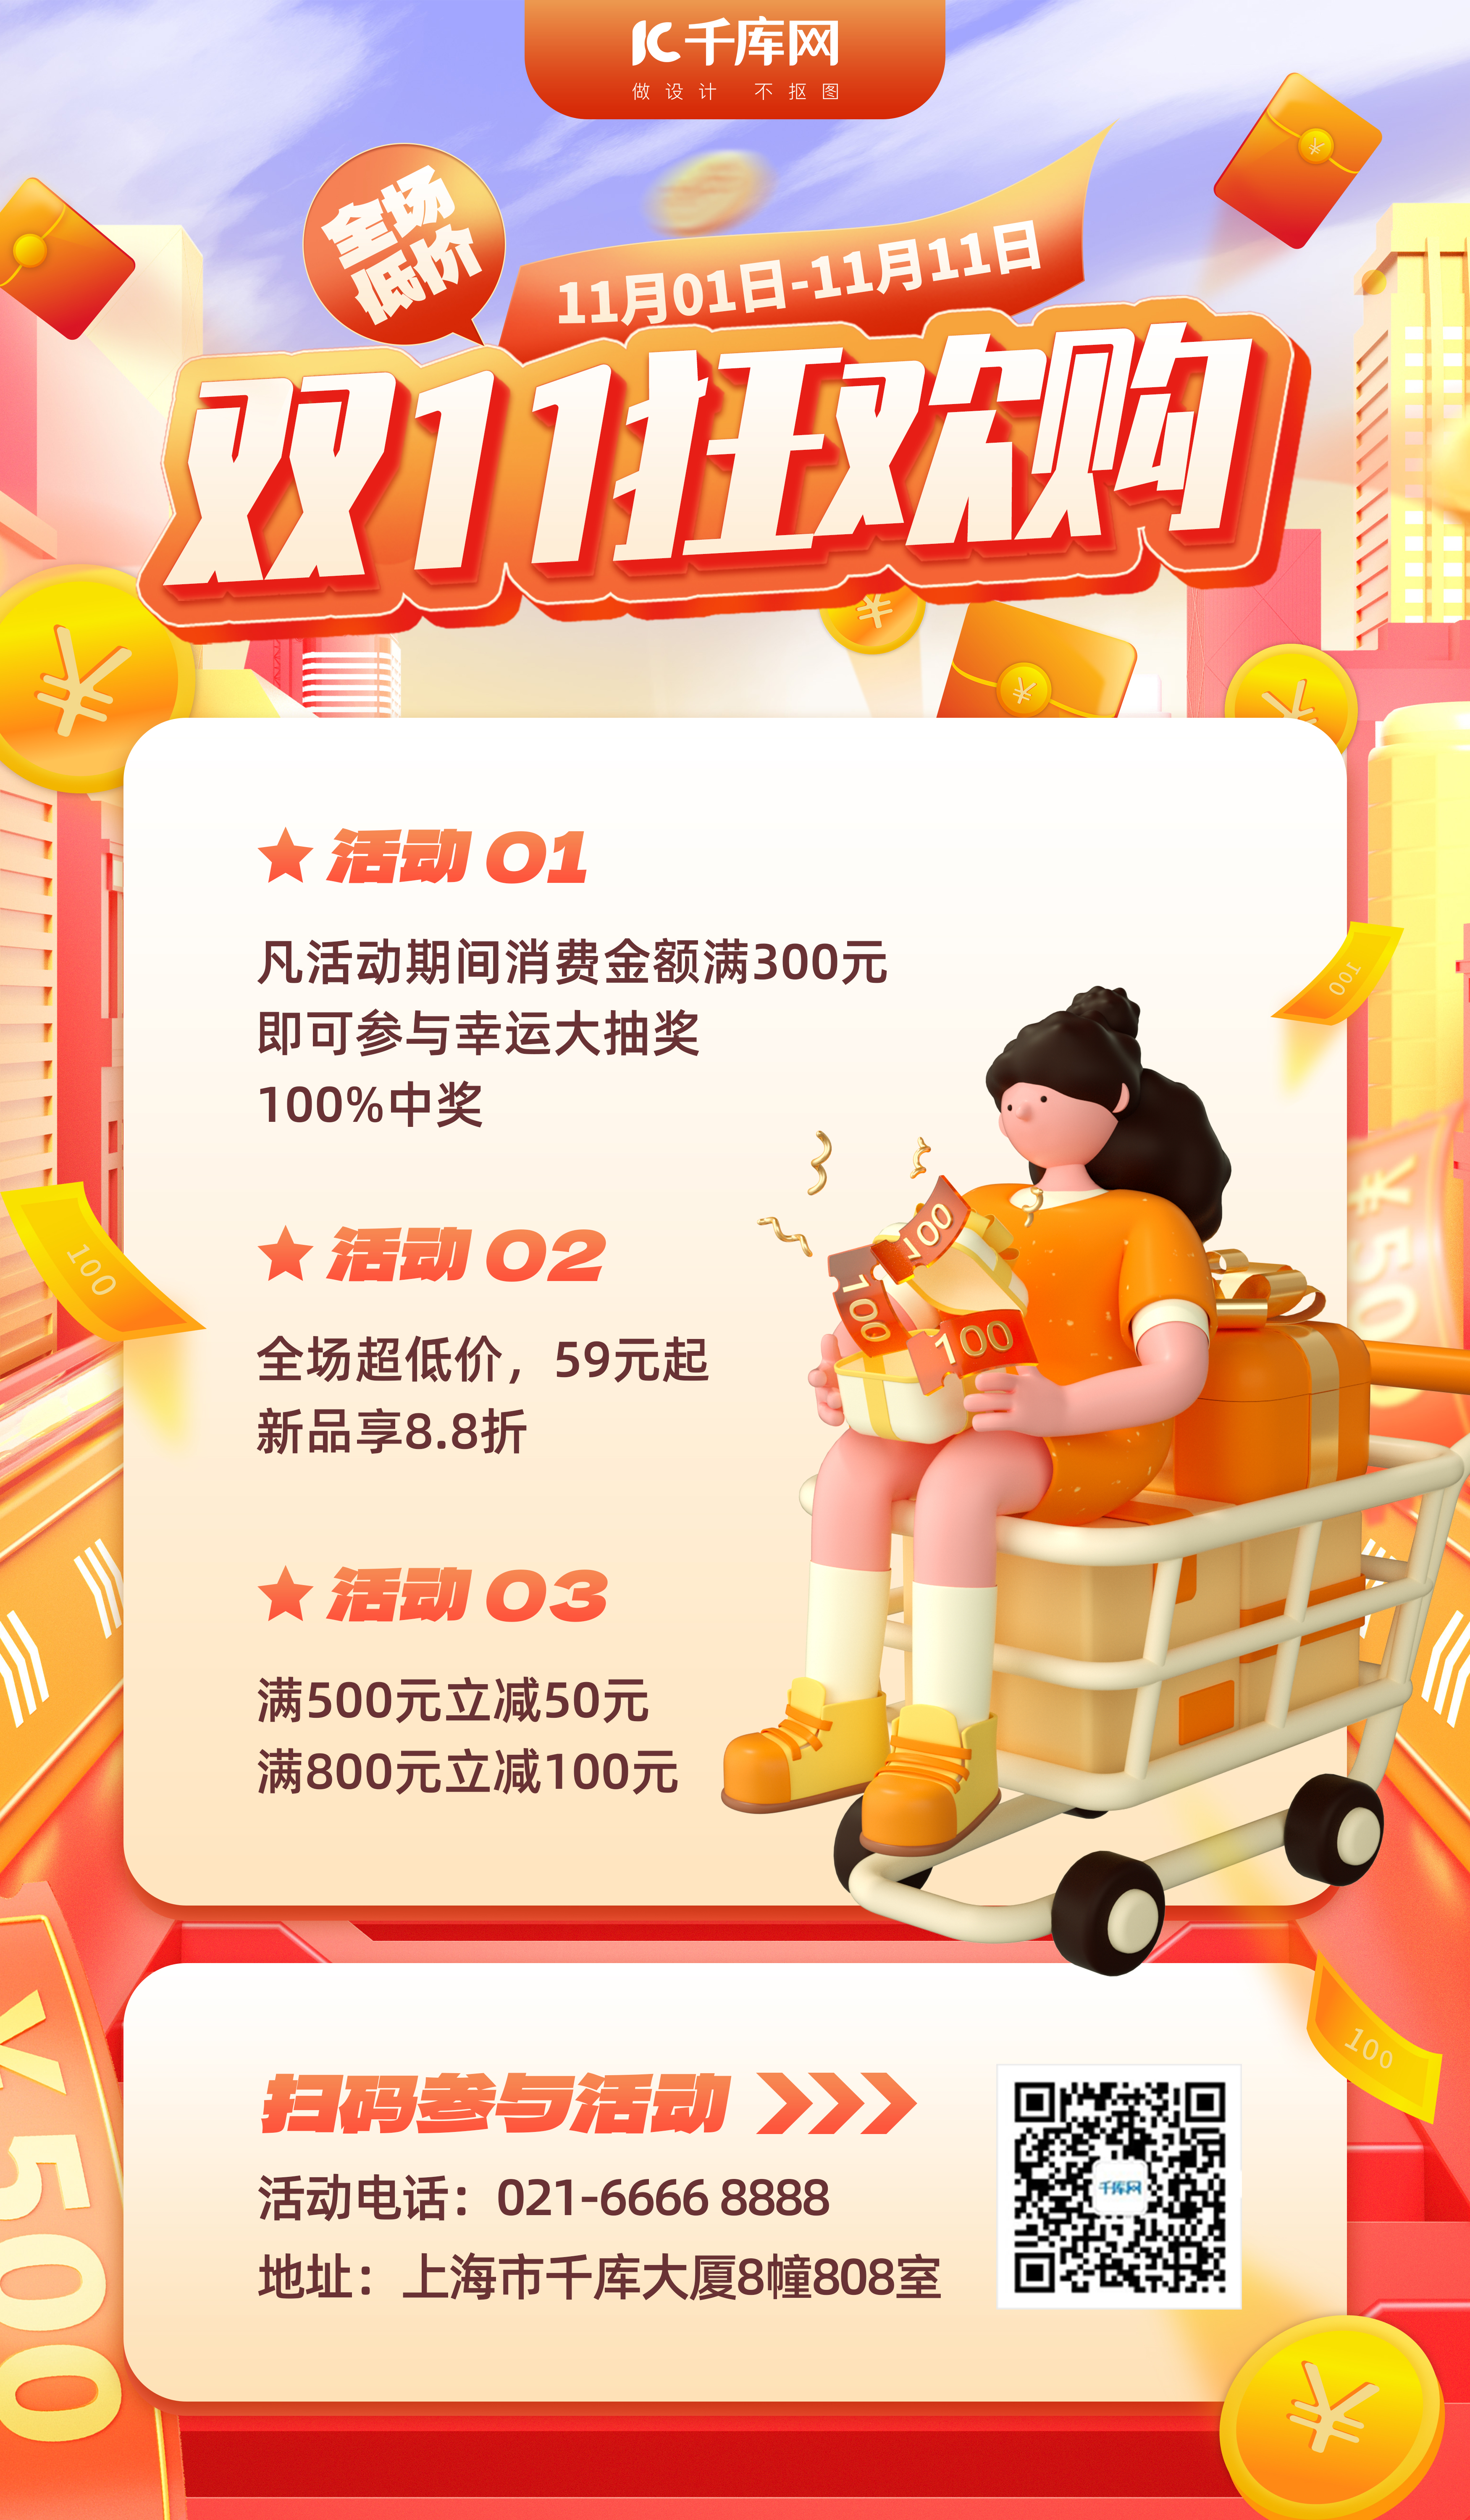 双11狂欢购购物车橙色3D广告宣传海报图片